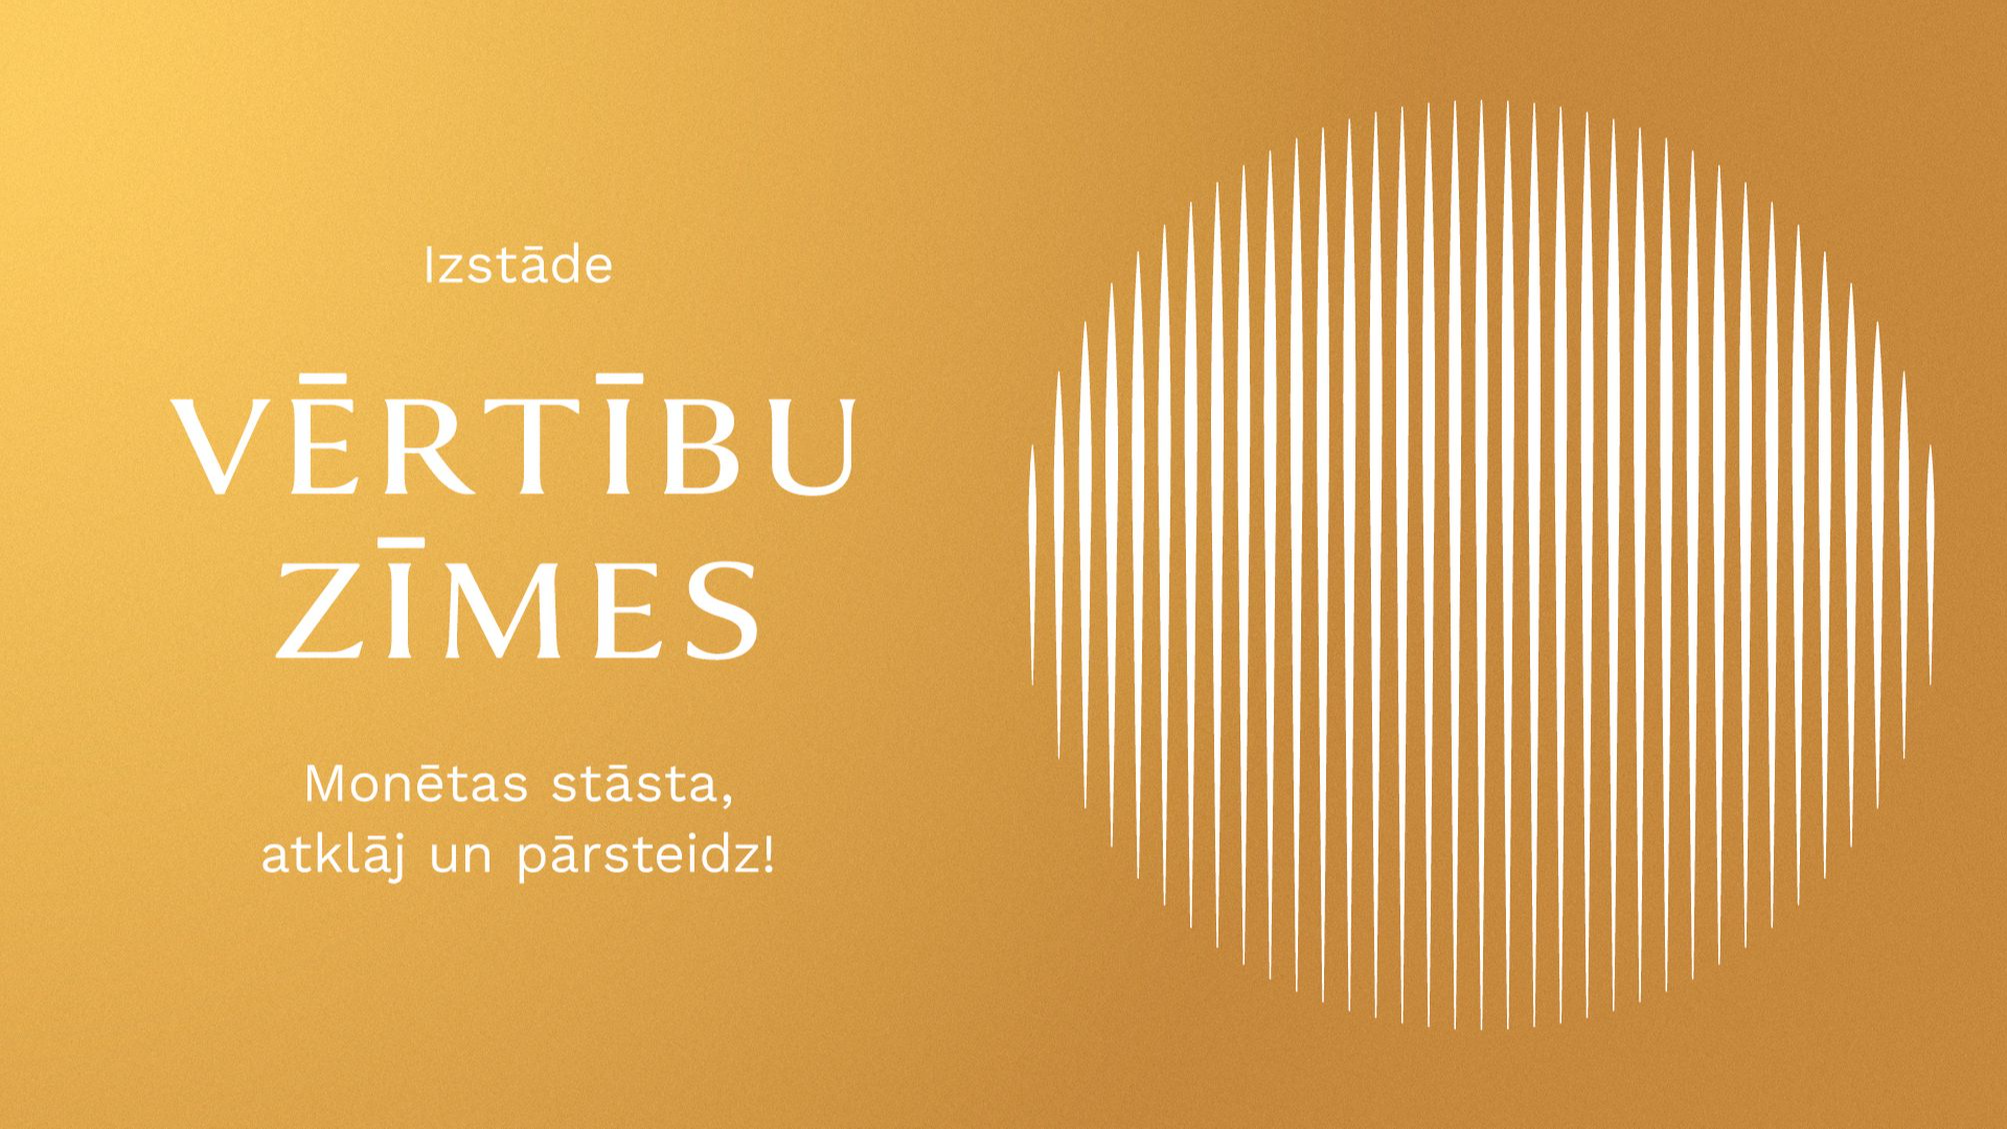 Latvijas Bankas simtgades izstāde "Vērtību zīmes"